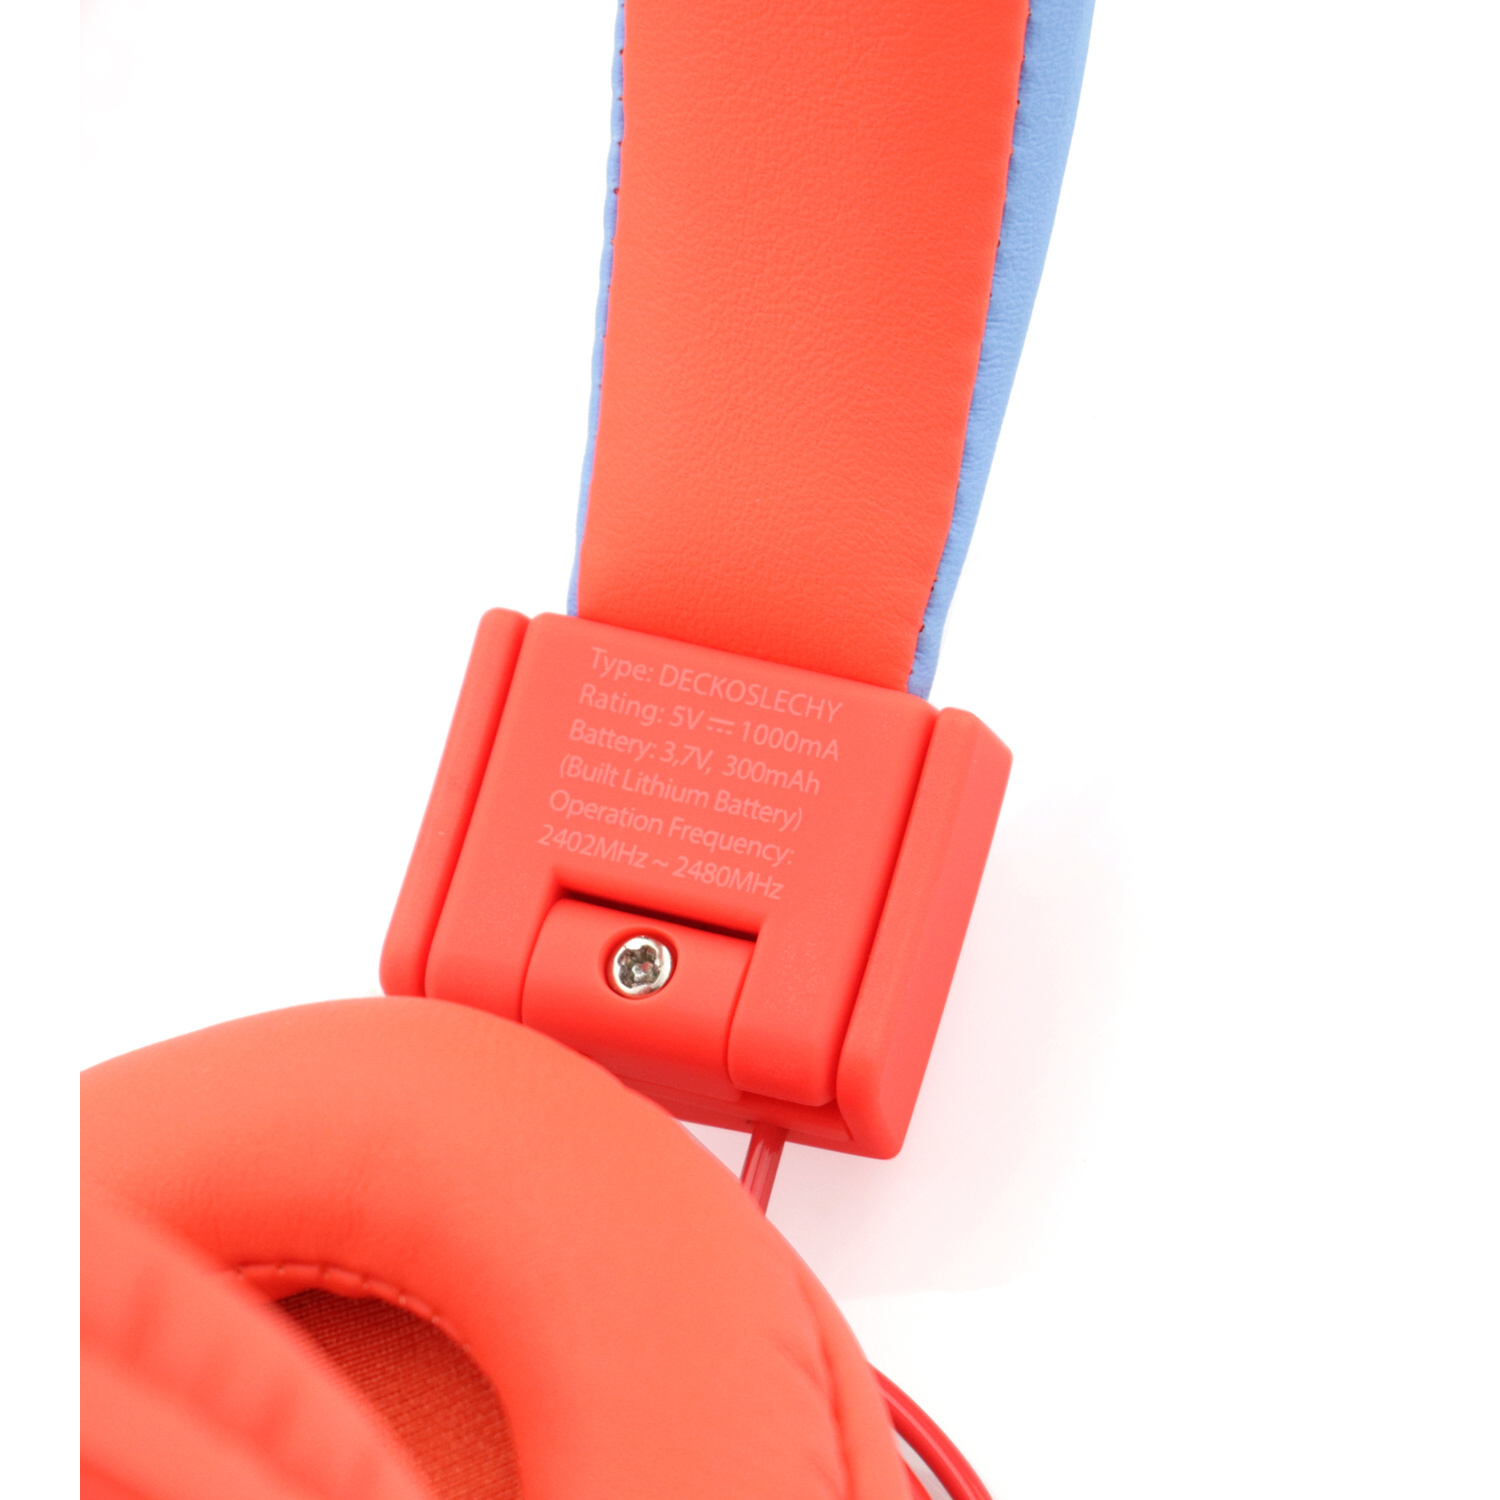 Bluetooth R, GOGEN Kopfhörer Over-ear DECKO Rot SLECHY